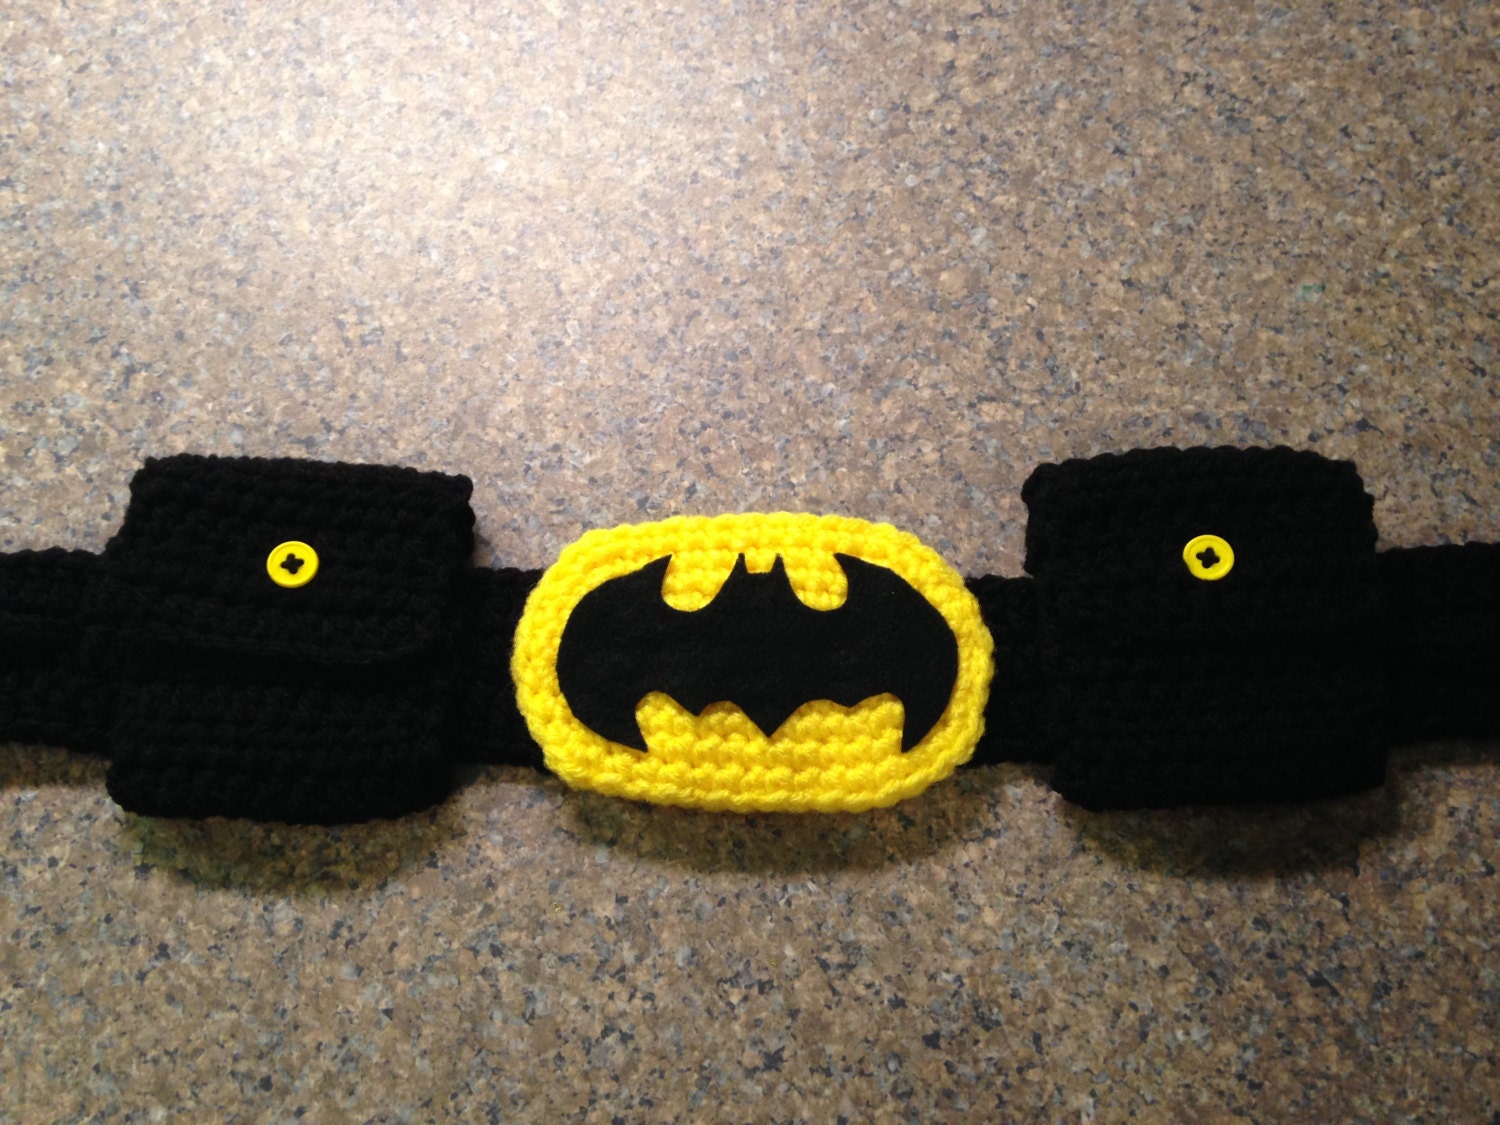 How do you make a Batman utility belt?